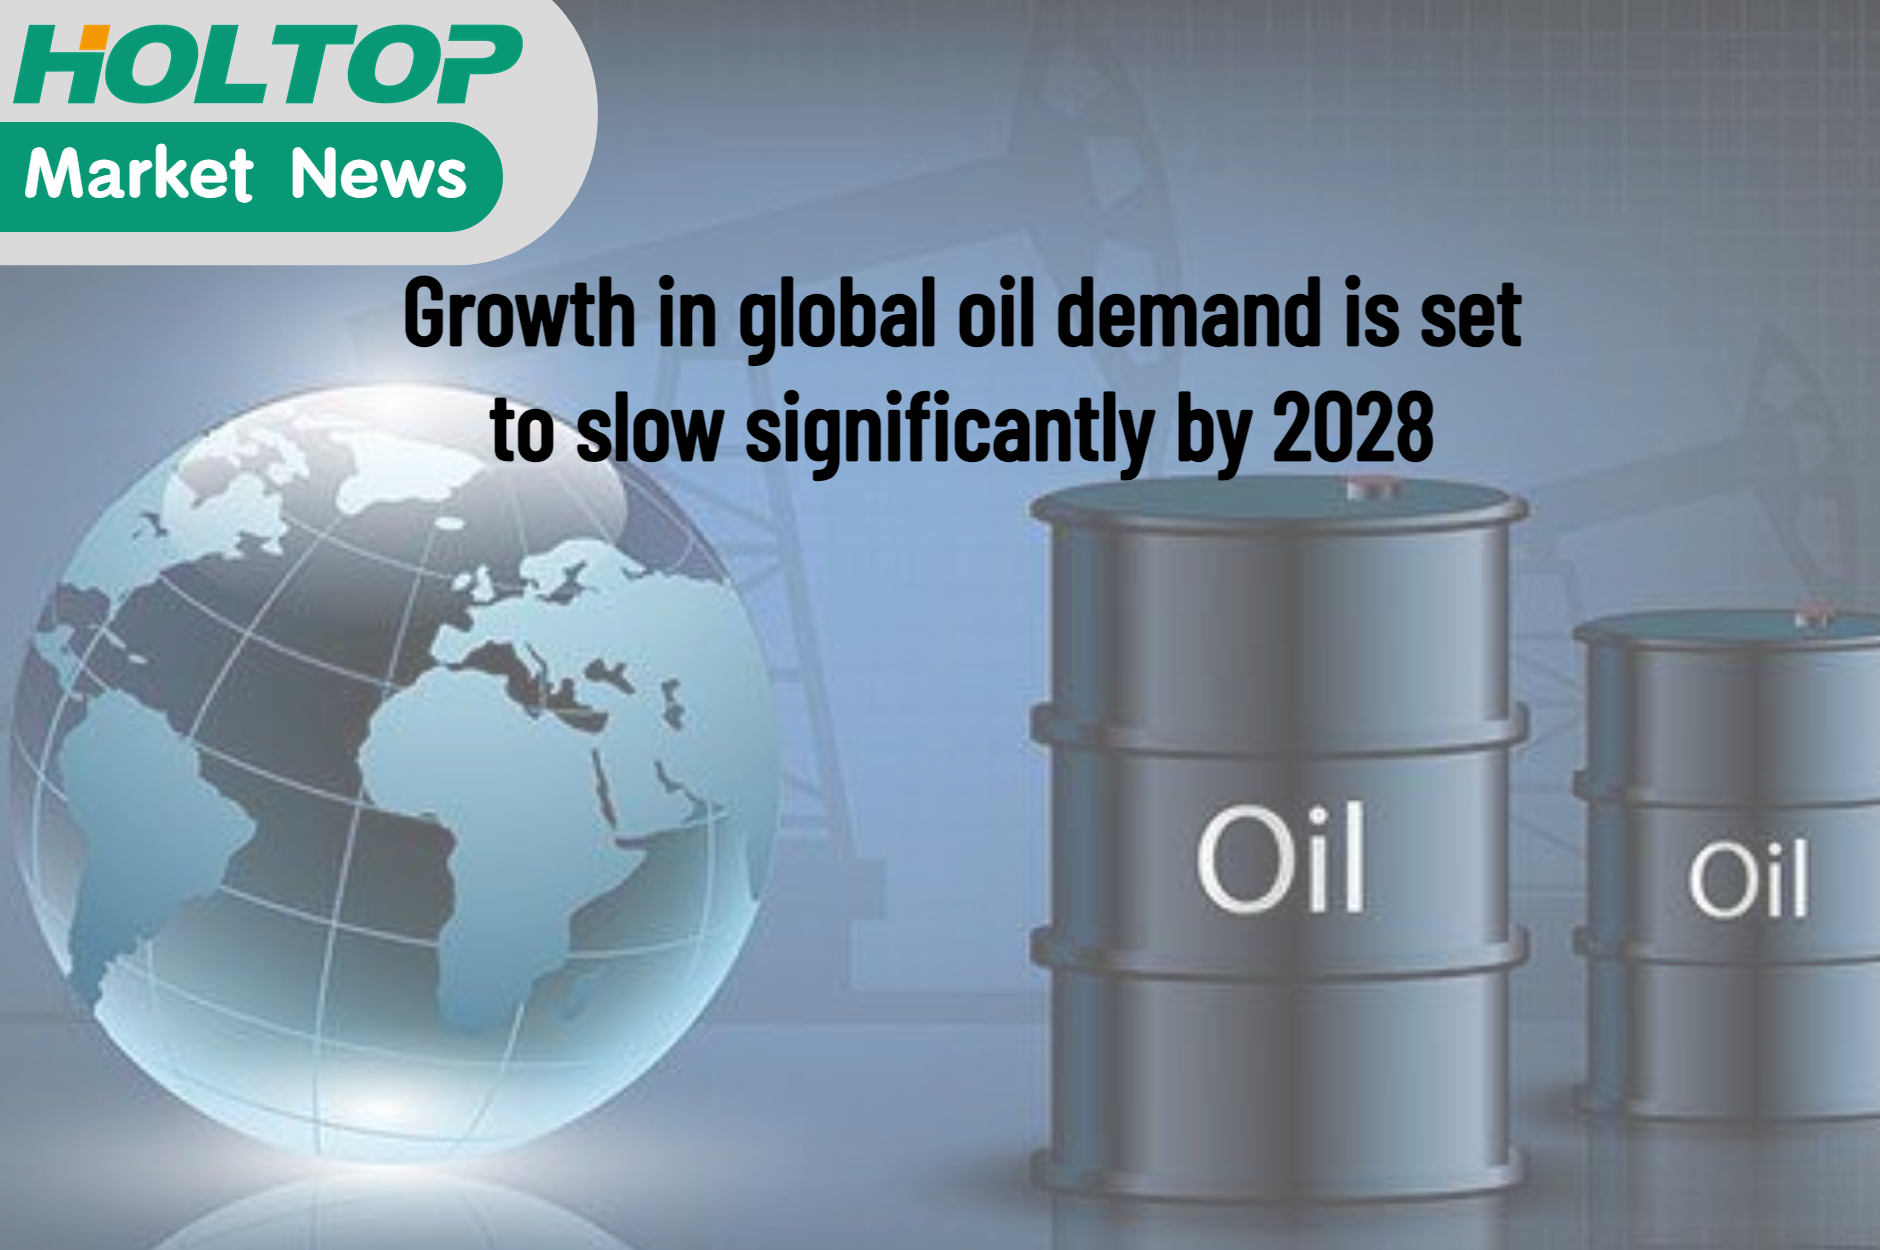 La croissance de la demande mondiale de pétrole devrait nettement ralentir d'ici 2028